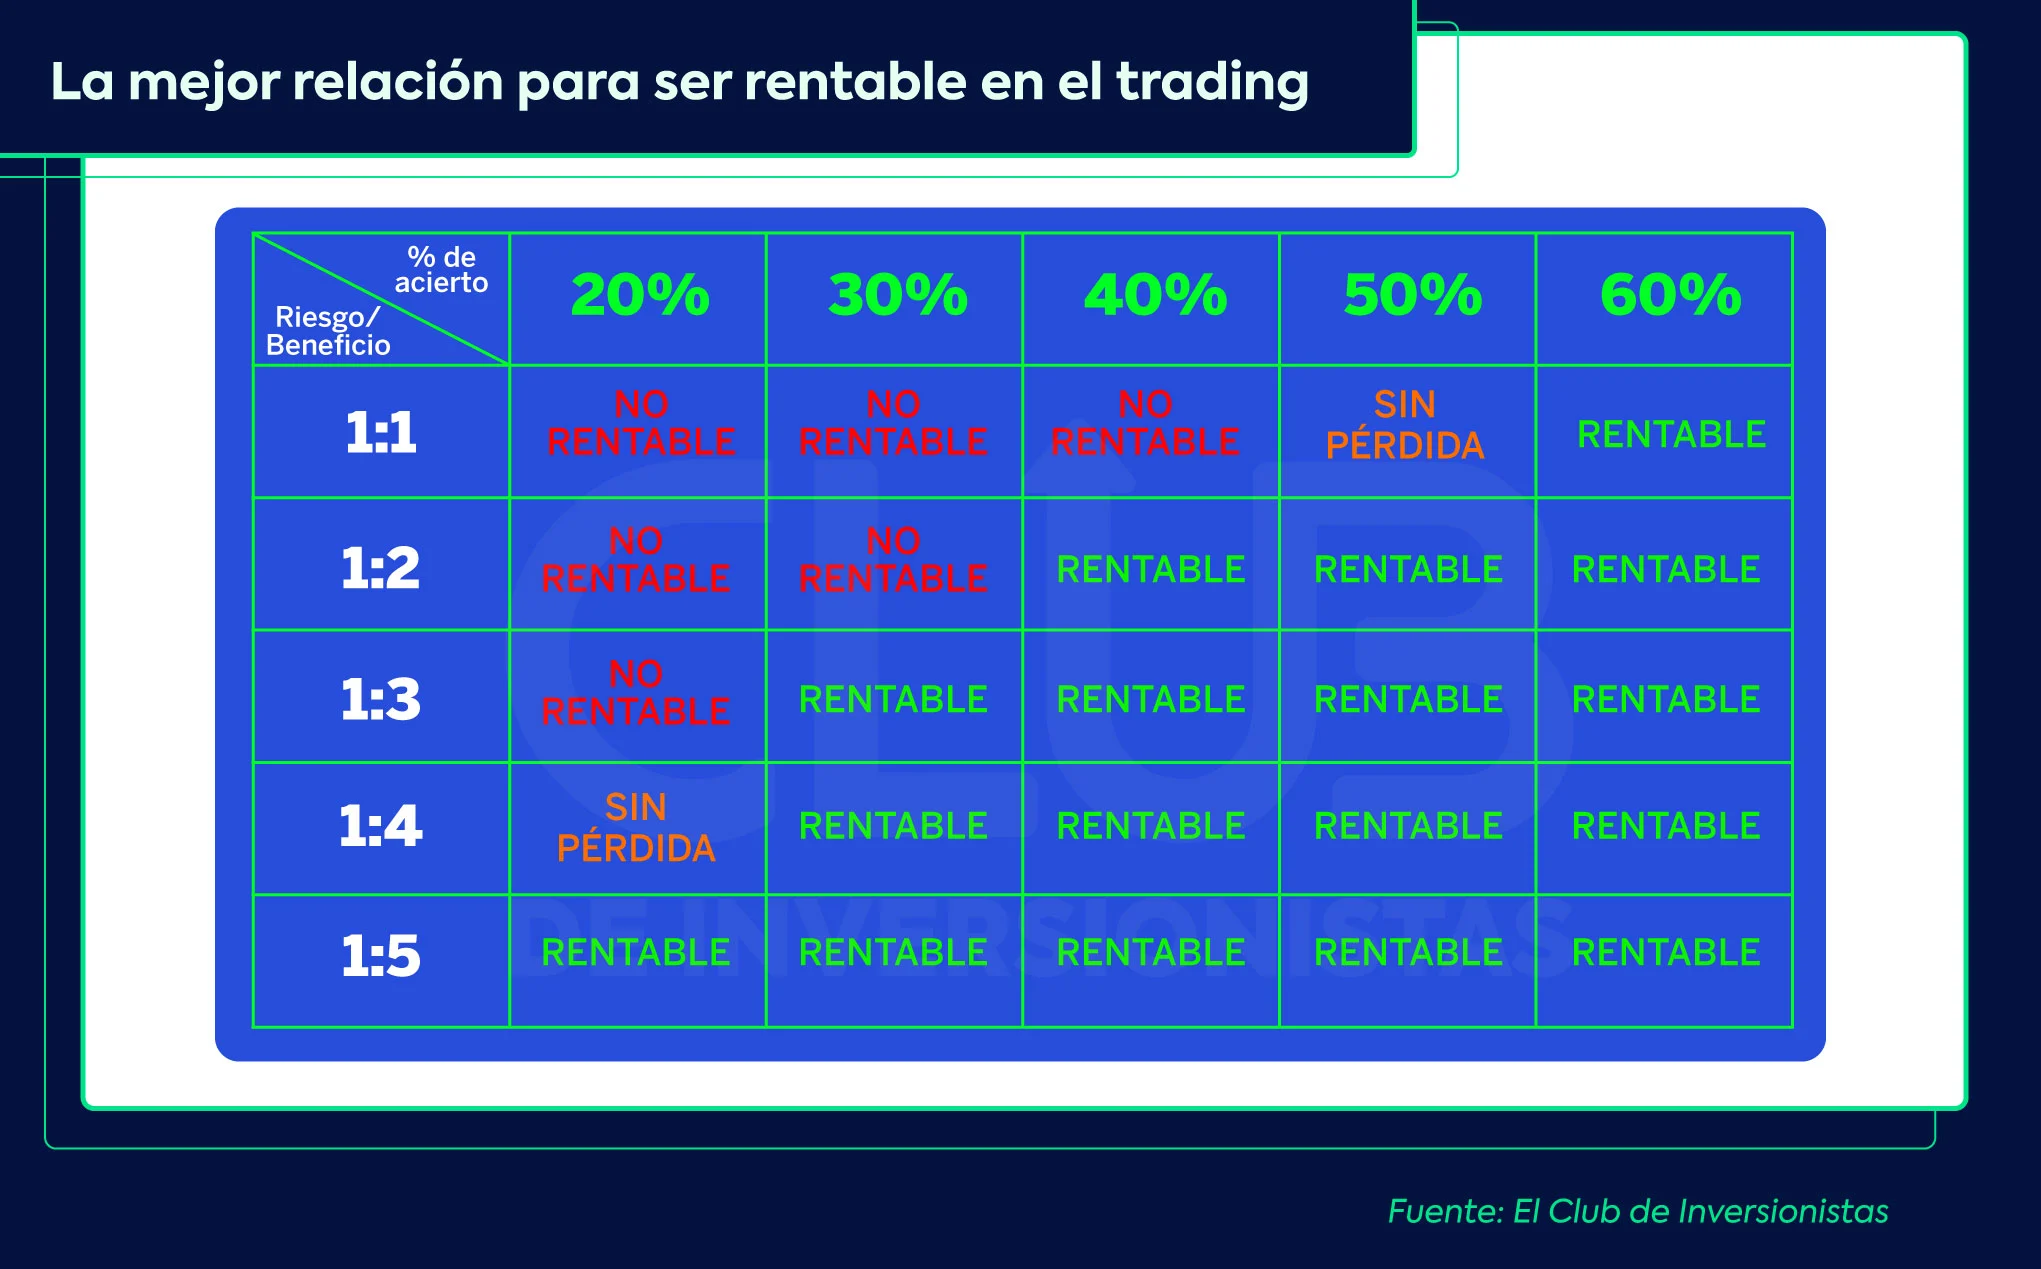 Si quieres saber cómo ser rentable en el trading, mira esta tabla cuando vayas a empezar a invertir